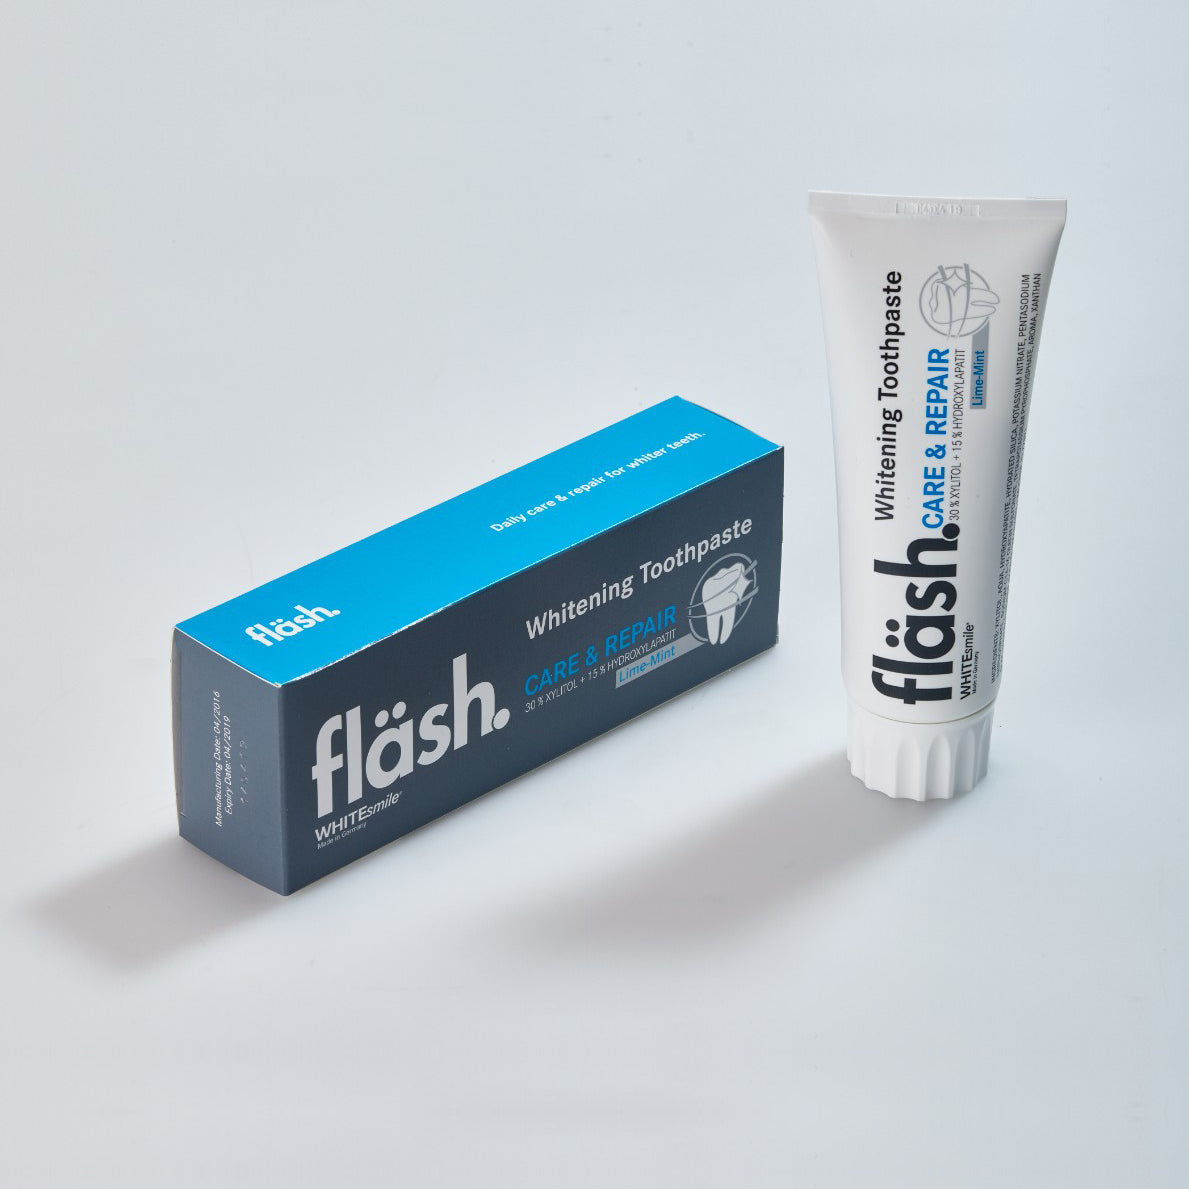 Whitesmile fläsh whitening toothpaste, 75ml